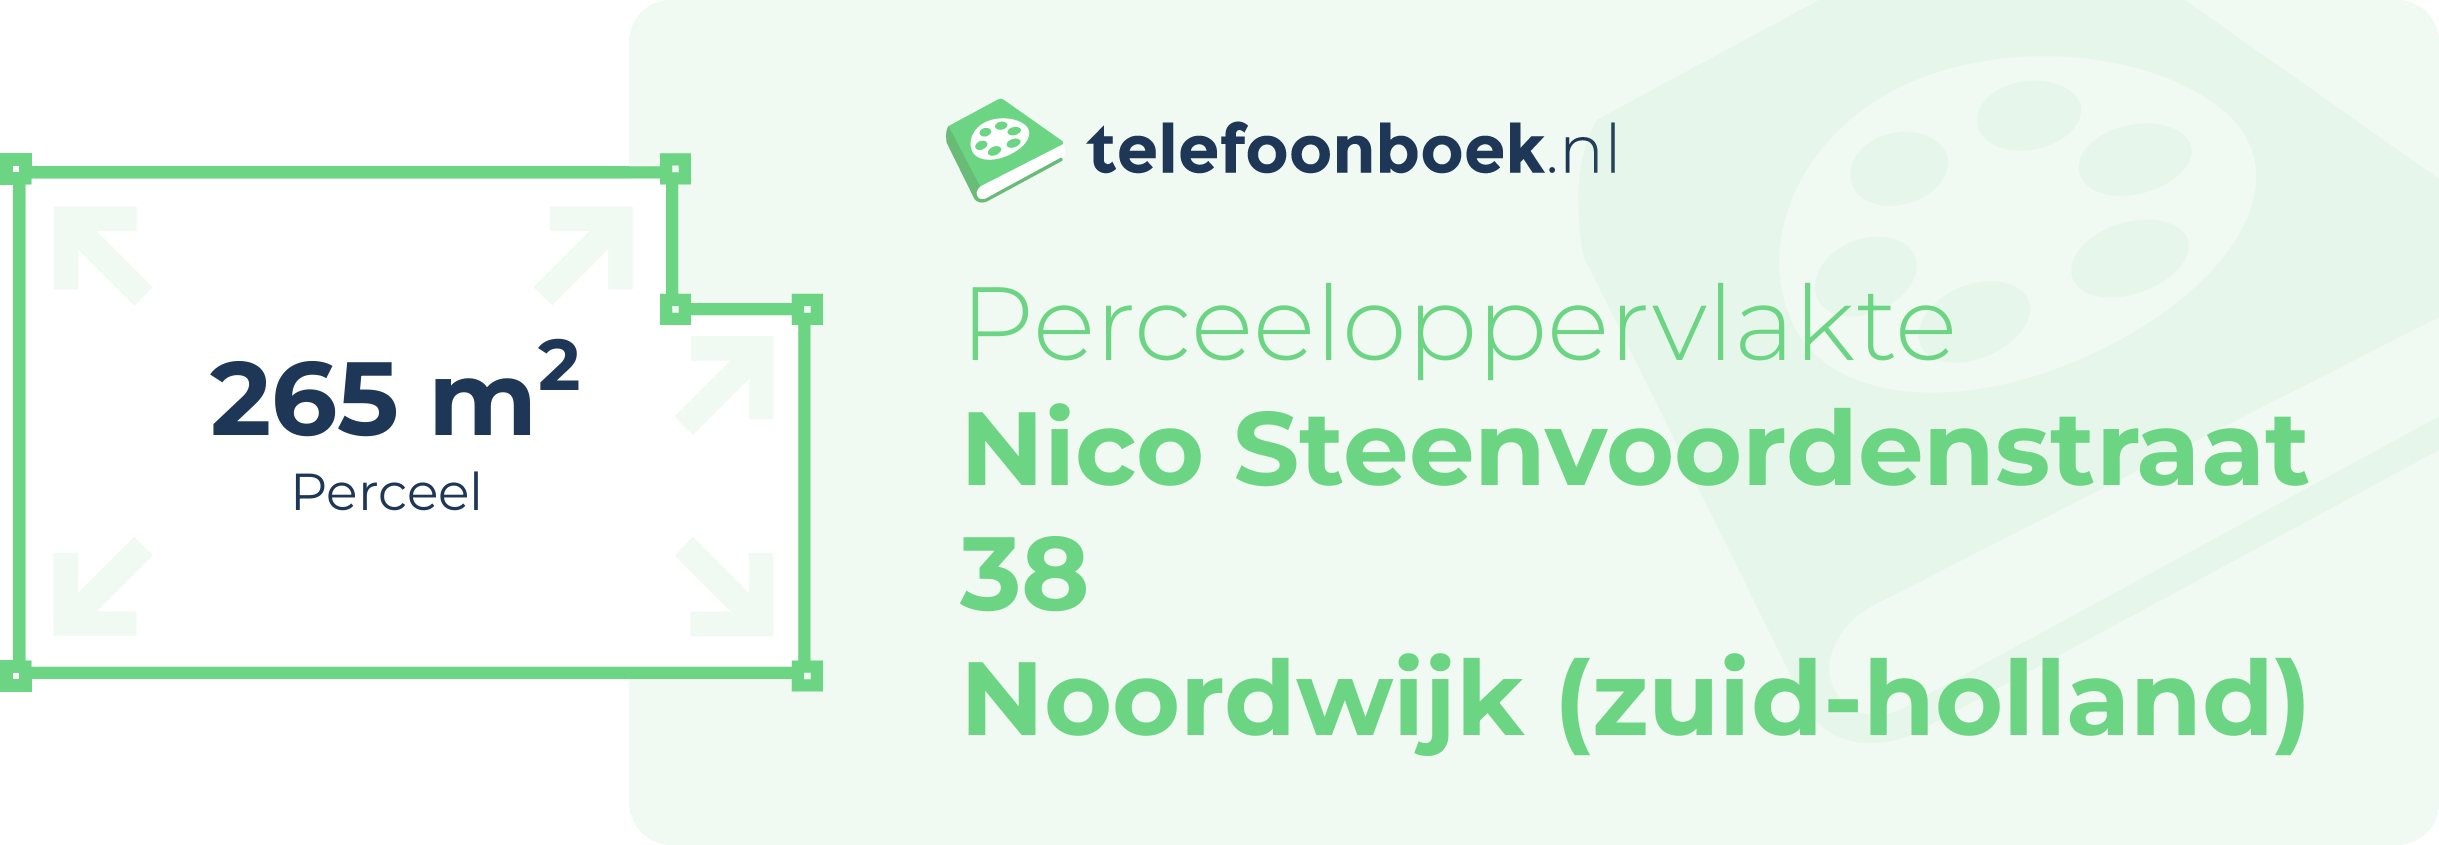 Perceeloppervlakte Nico Steenvoordenstraat 38 Noordwijk (Zuid-Holland)